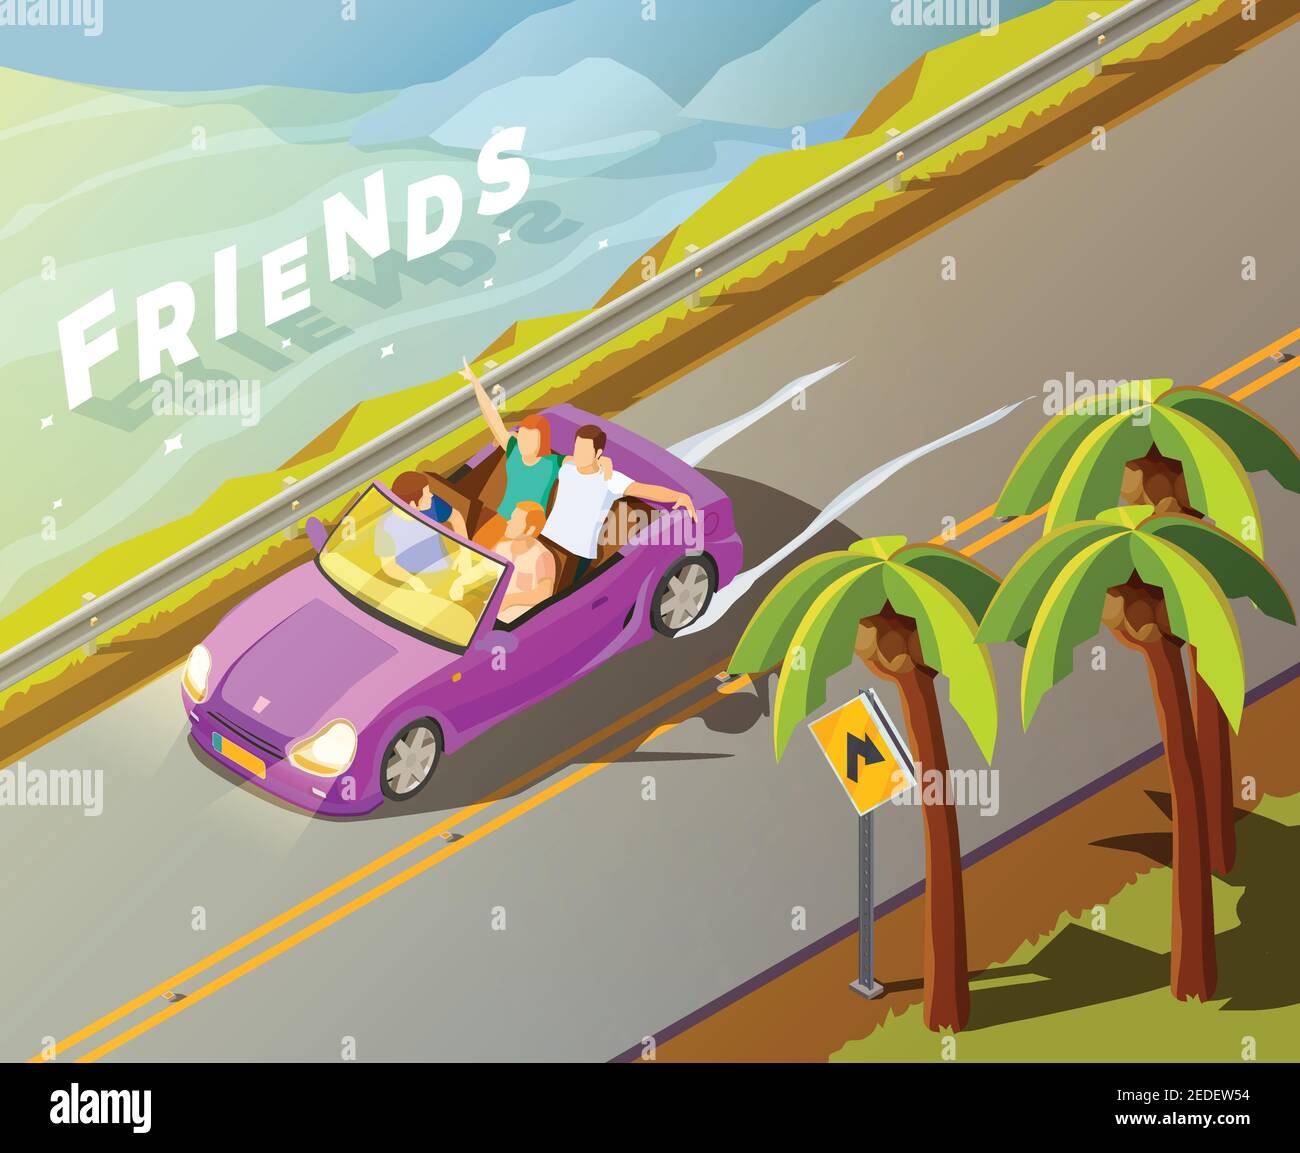 Amici che viaggiano in tropici in lux brillante magenta in auto affittata vista isometrica con illustrazione vettoriale delle palme a lato della strada Illustrazione Vettoriale